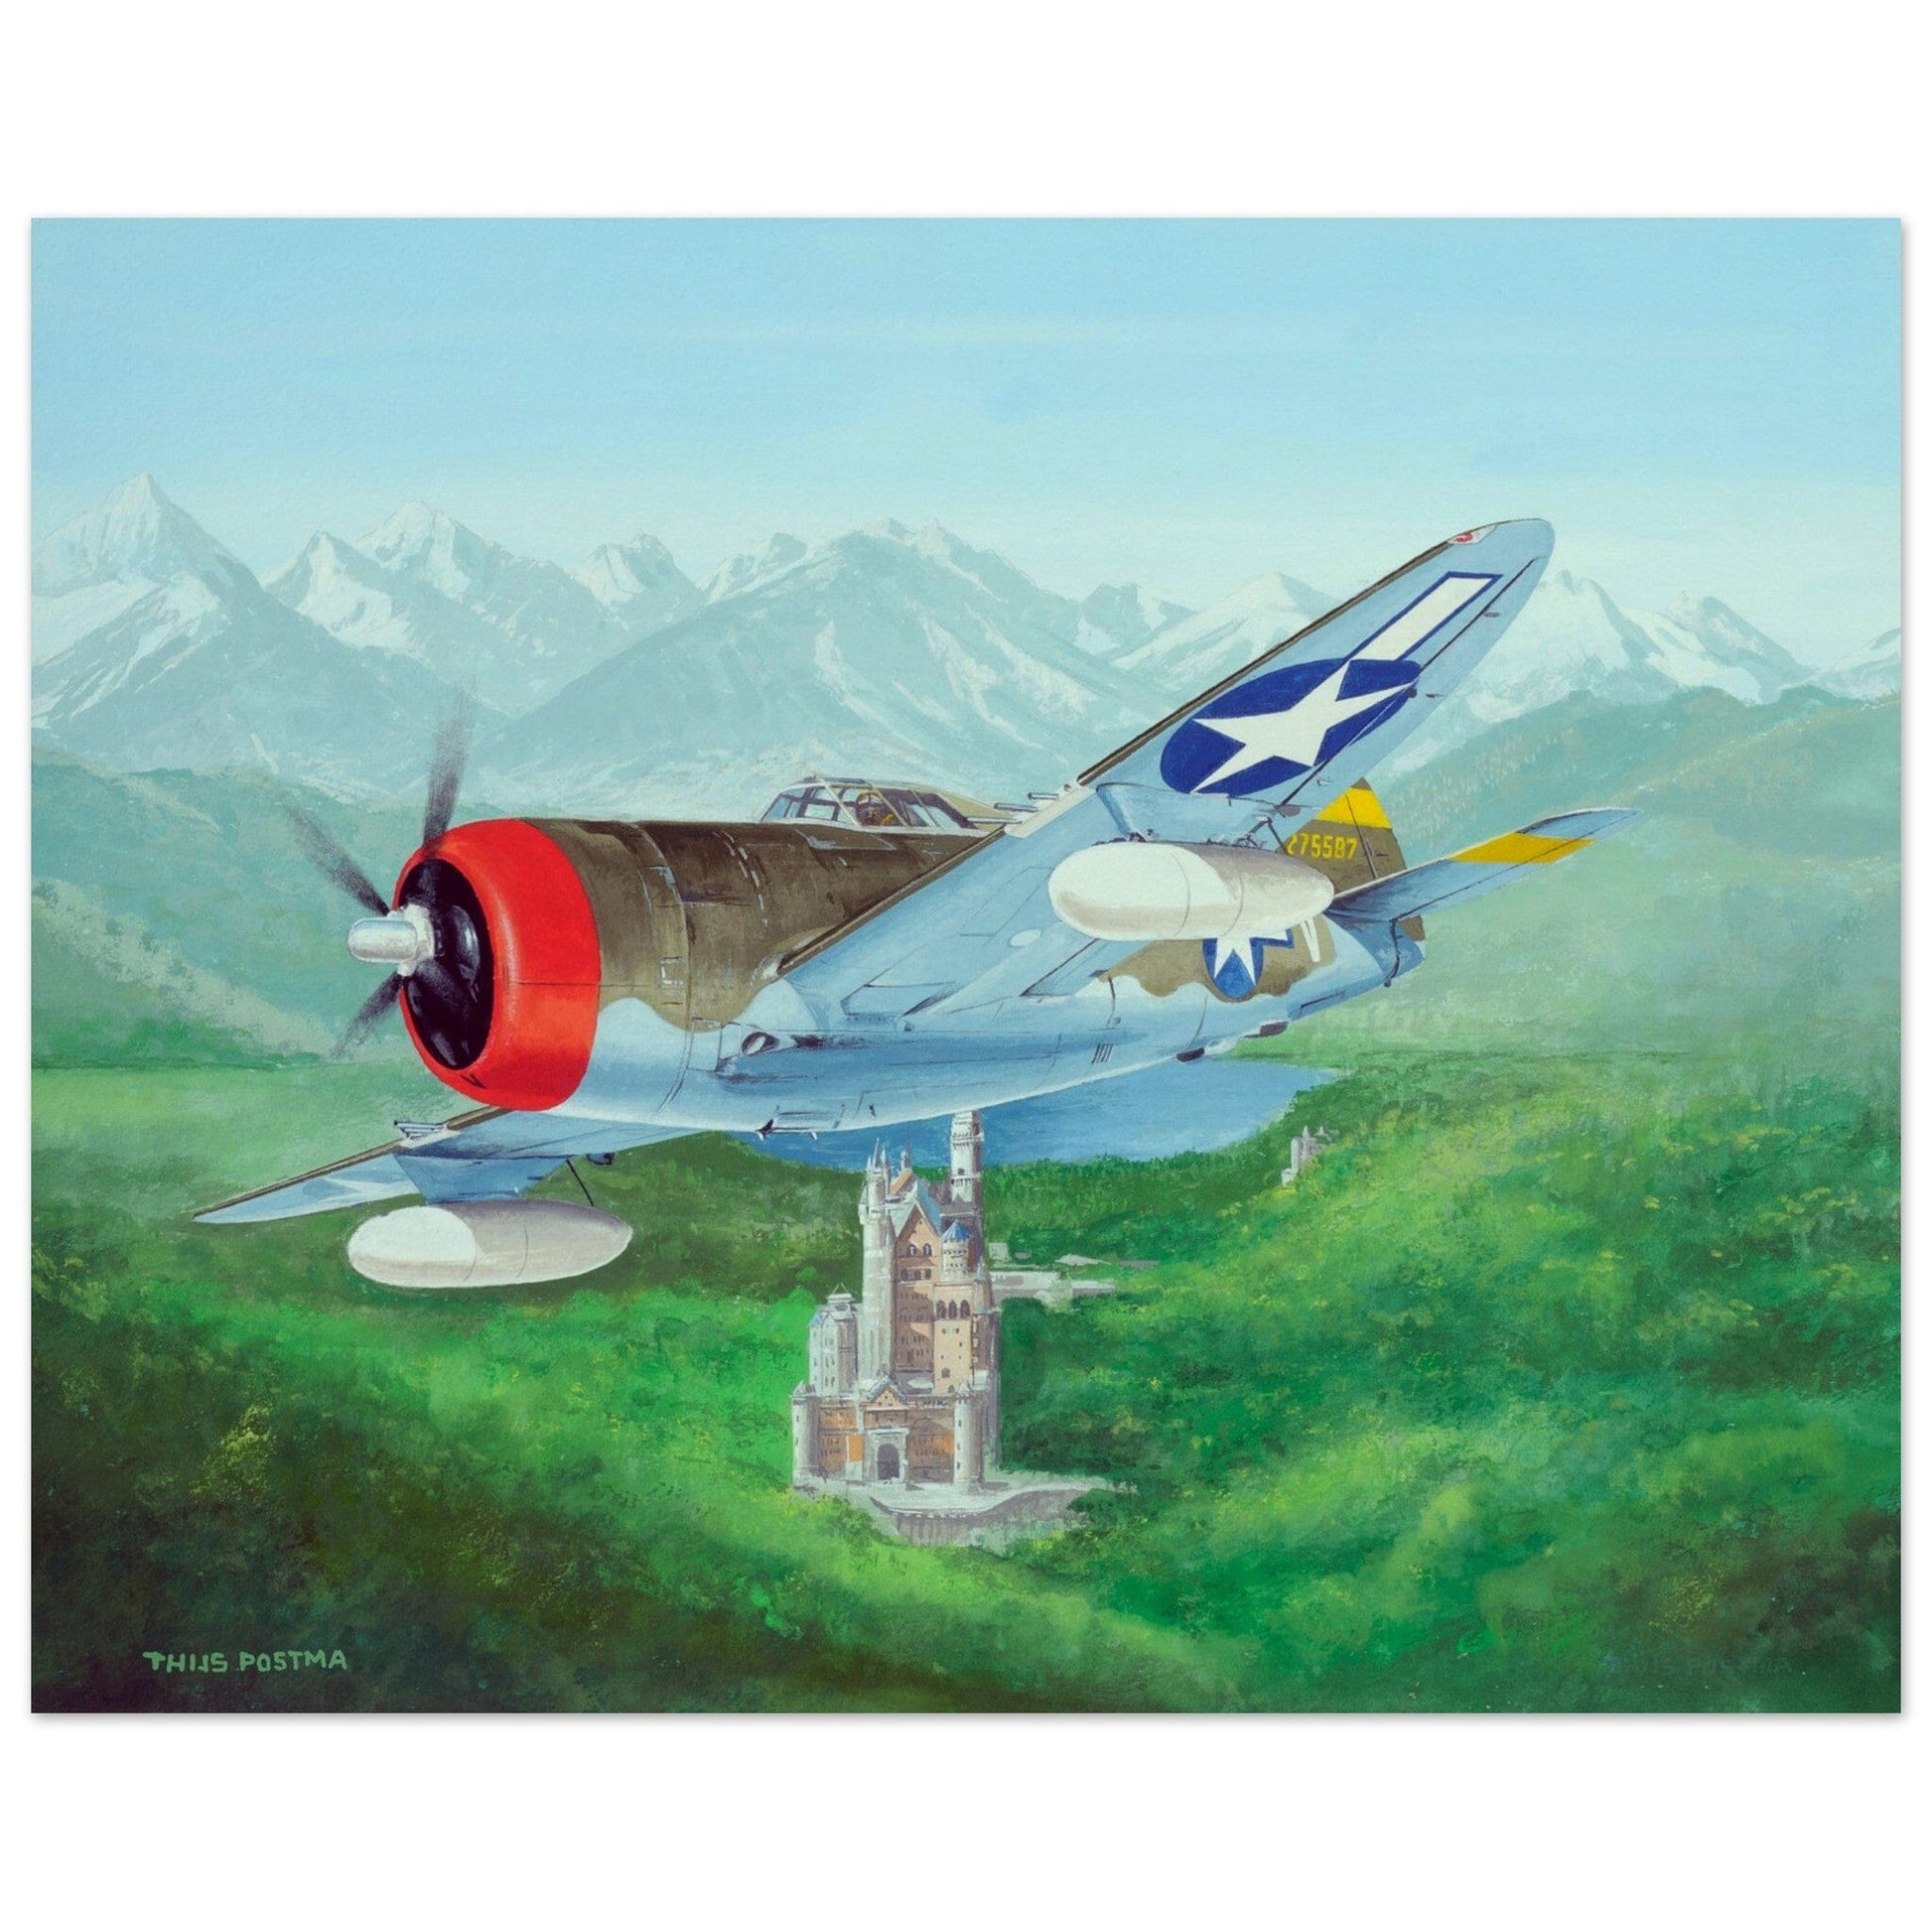 Thijs Postma - Poster - Republic Thunderbolt USAF Over Schloss Neuschwanstein Poster Only TP Aviation Art 40x50 cm / 16x20″ 